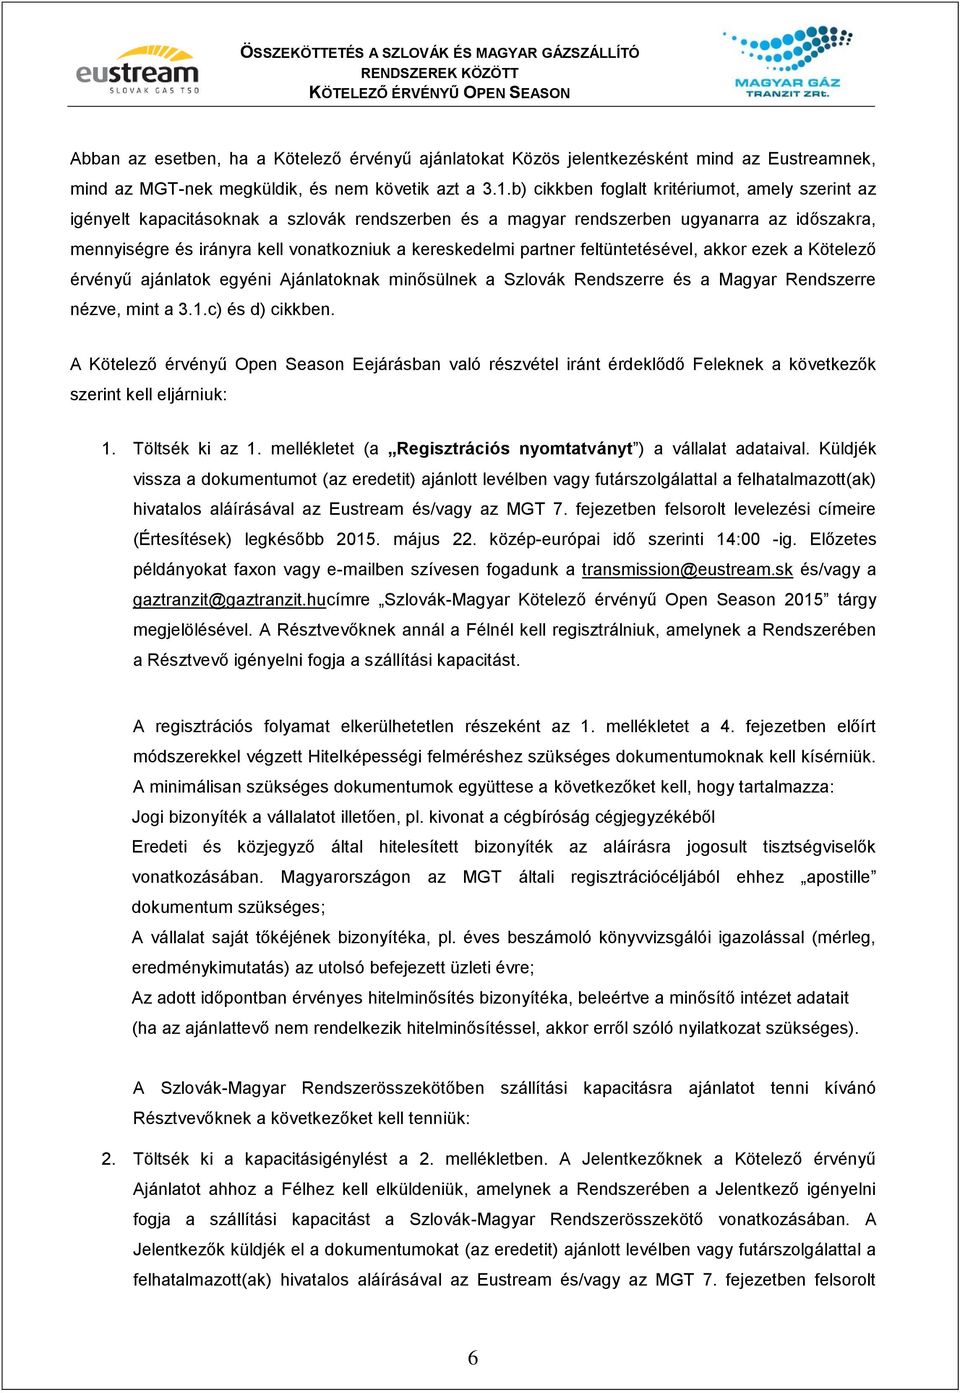 partner feltüntetésével, akkor ezek a Kötelező érvényű ajánlatok egyéni Ajánlatoknak minősülnek a Szlovák Rendszerre és a Magyar Rendszerre nézve, mint a 3.1.c) és d) cikkben.